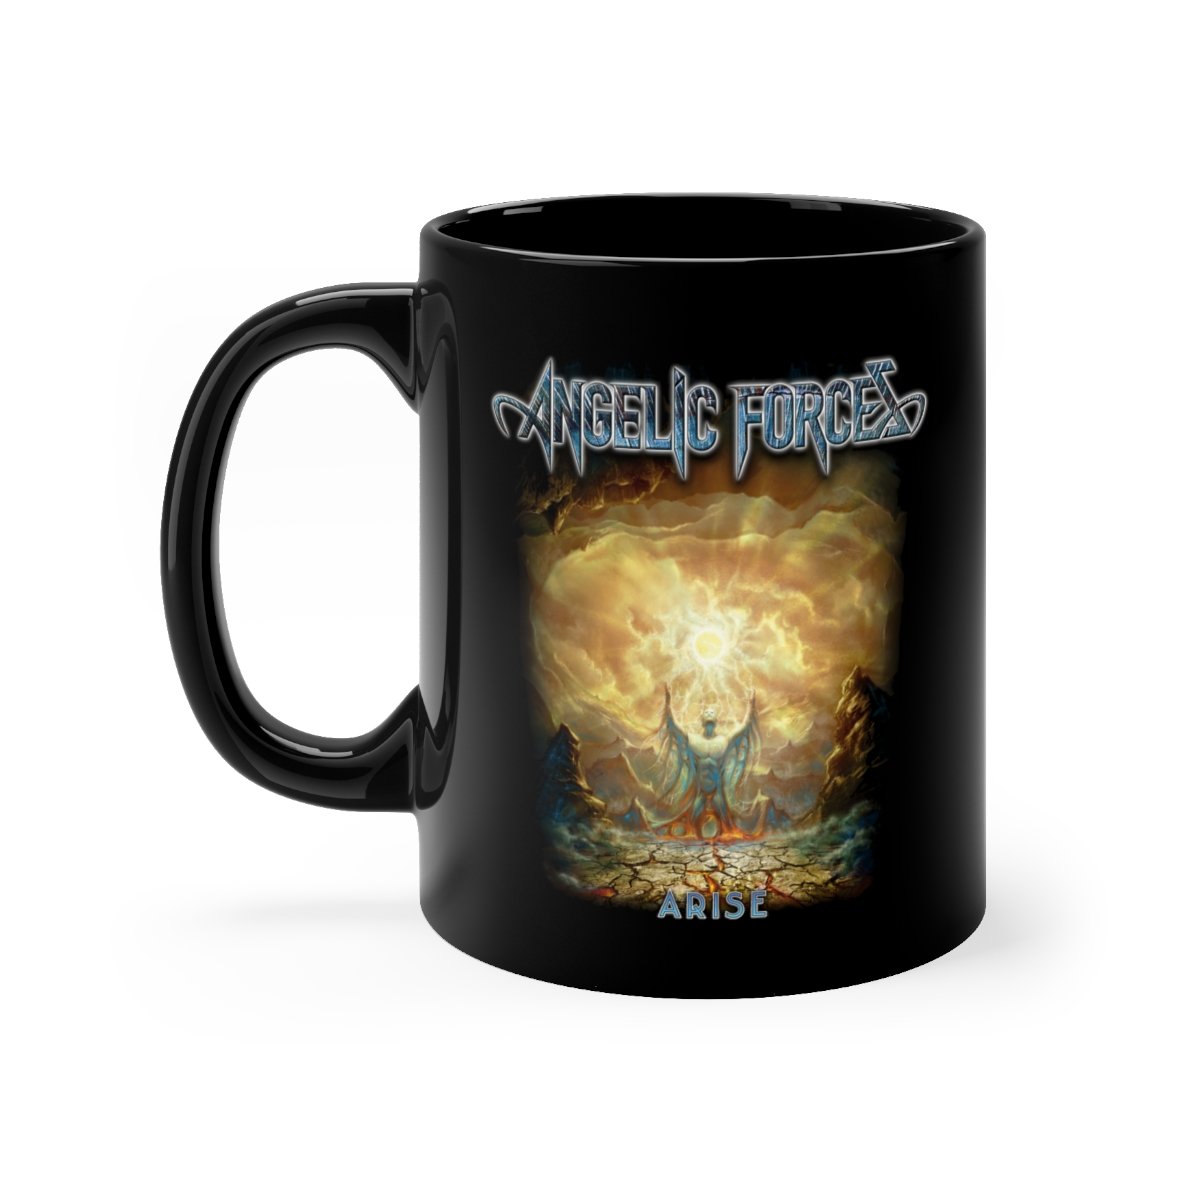 Angelic Forces – Arise 11oz Black mug